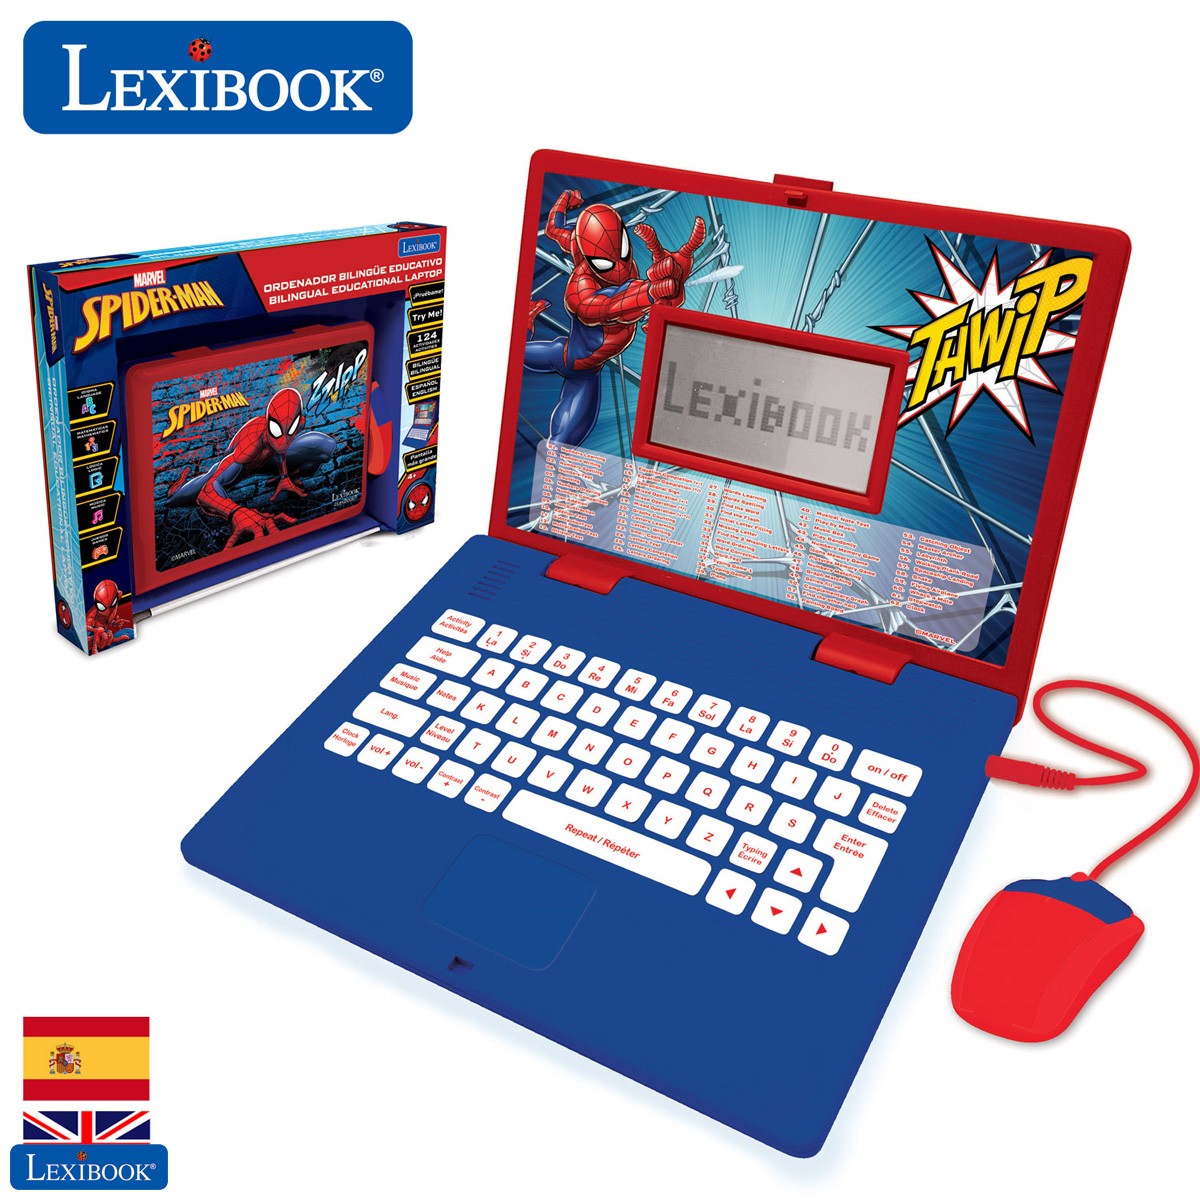 Spider-man - Ordenador portátil educativo y bilingüe español/inglés